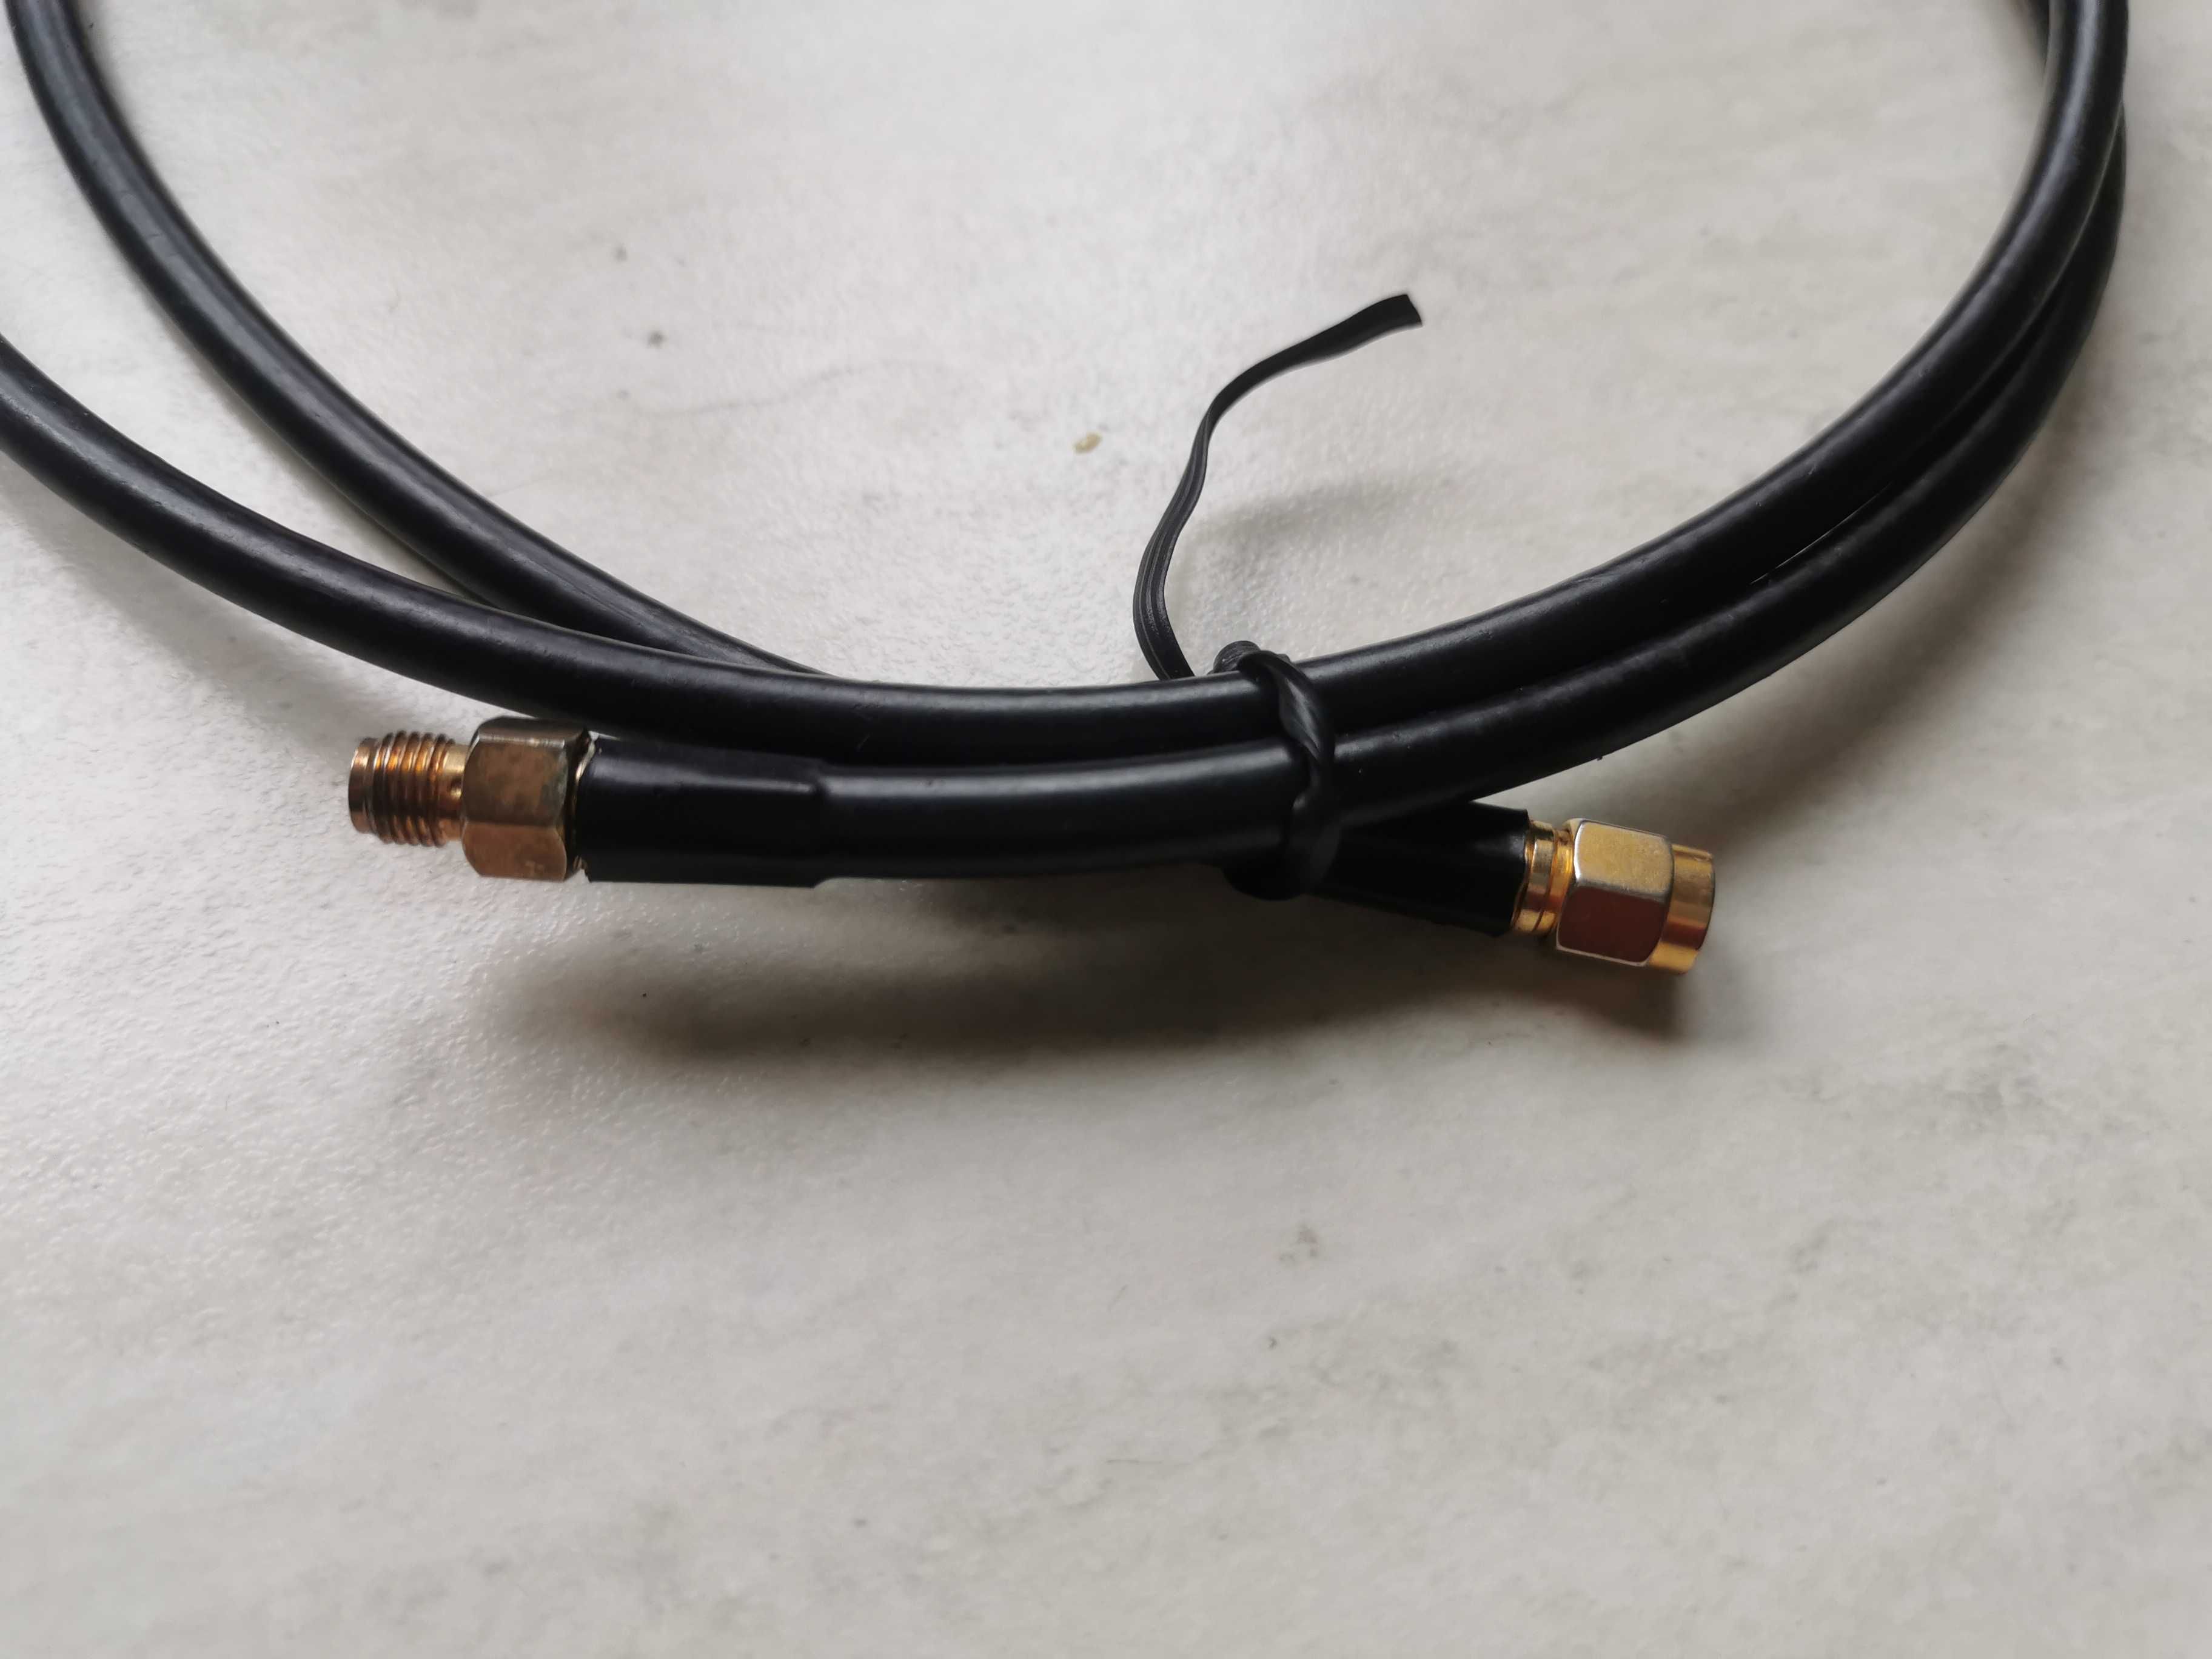 Przedłużacz antenowy, przyłącze
kabel typ wisp H155